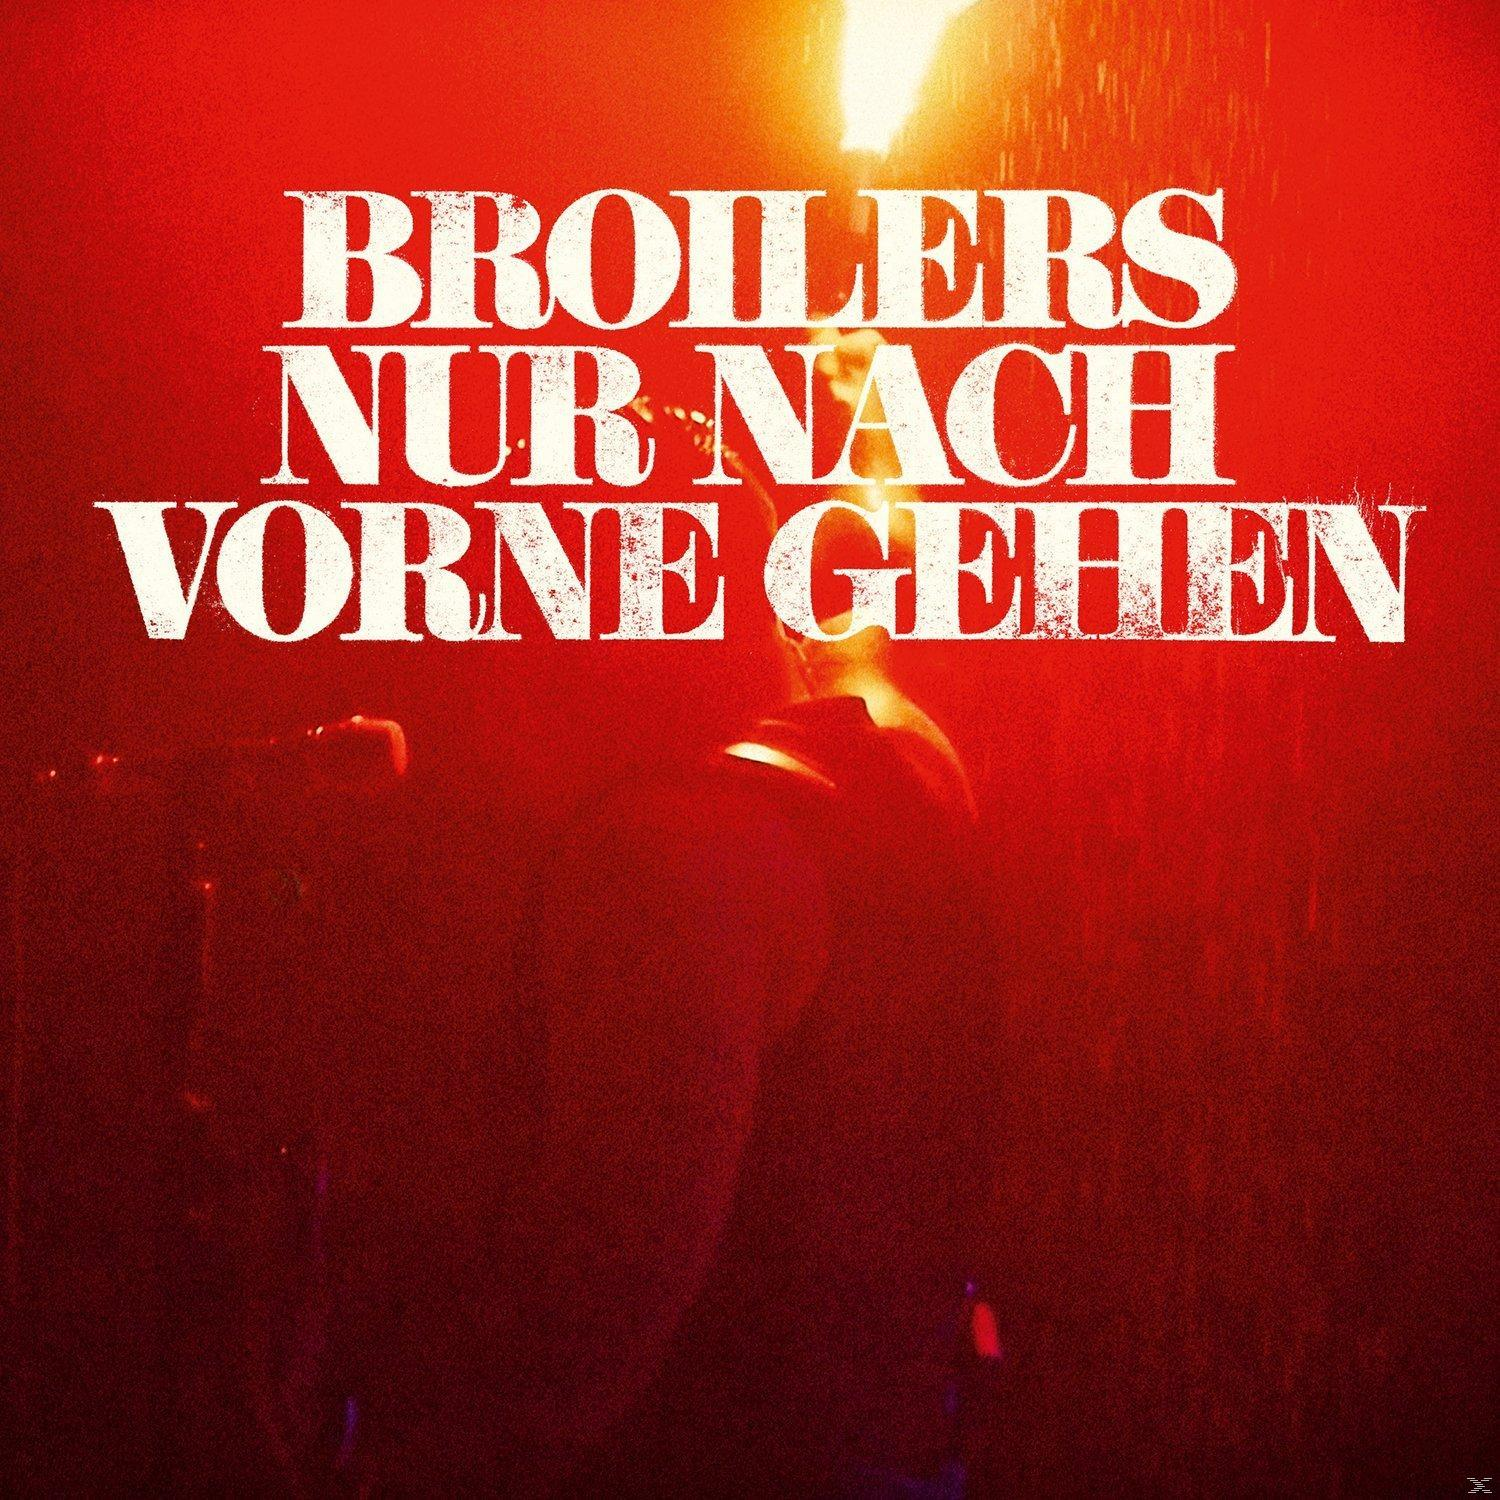 Broilers - Nur Nach - 7\